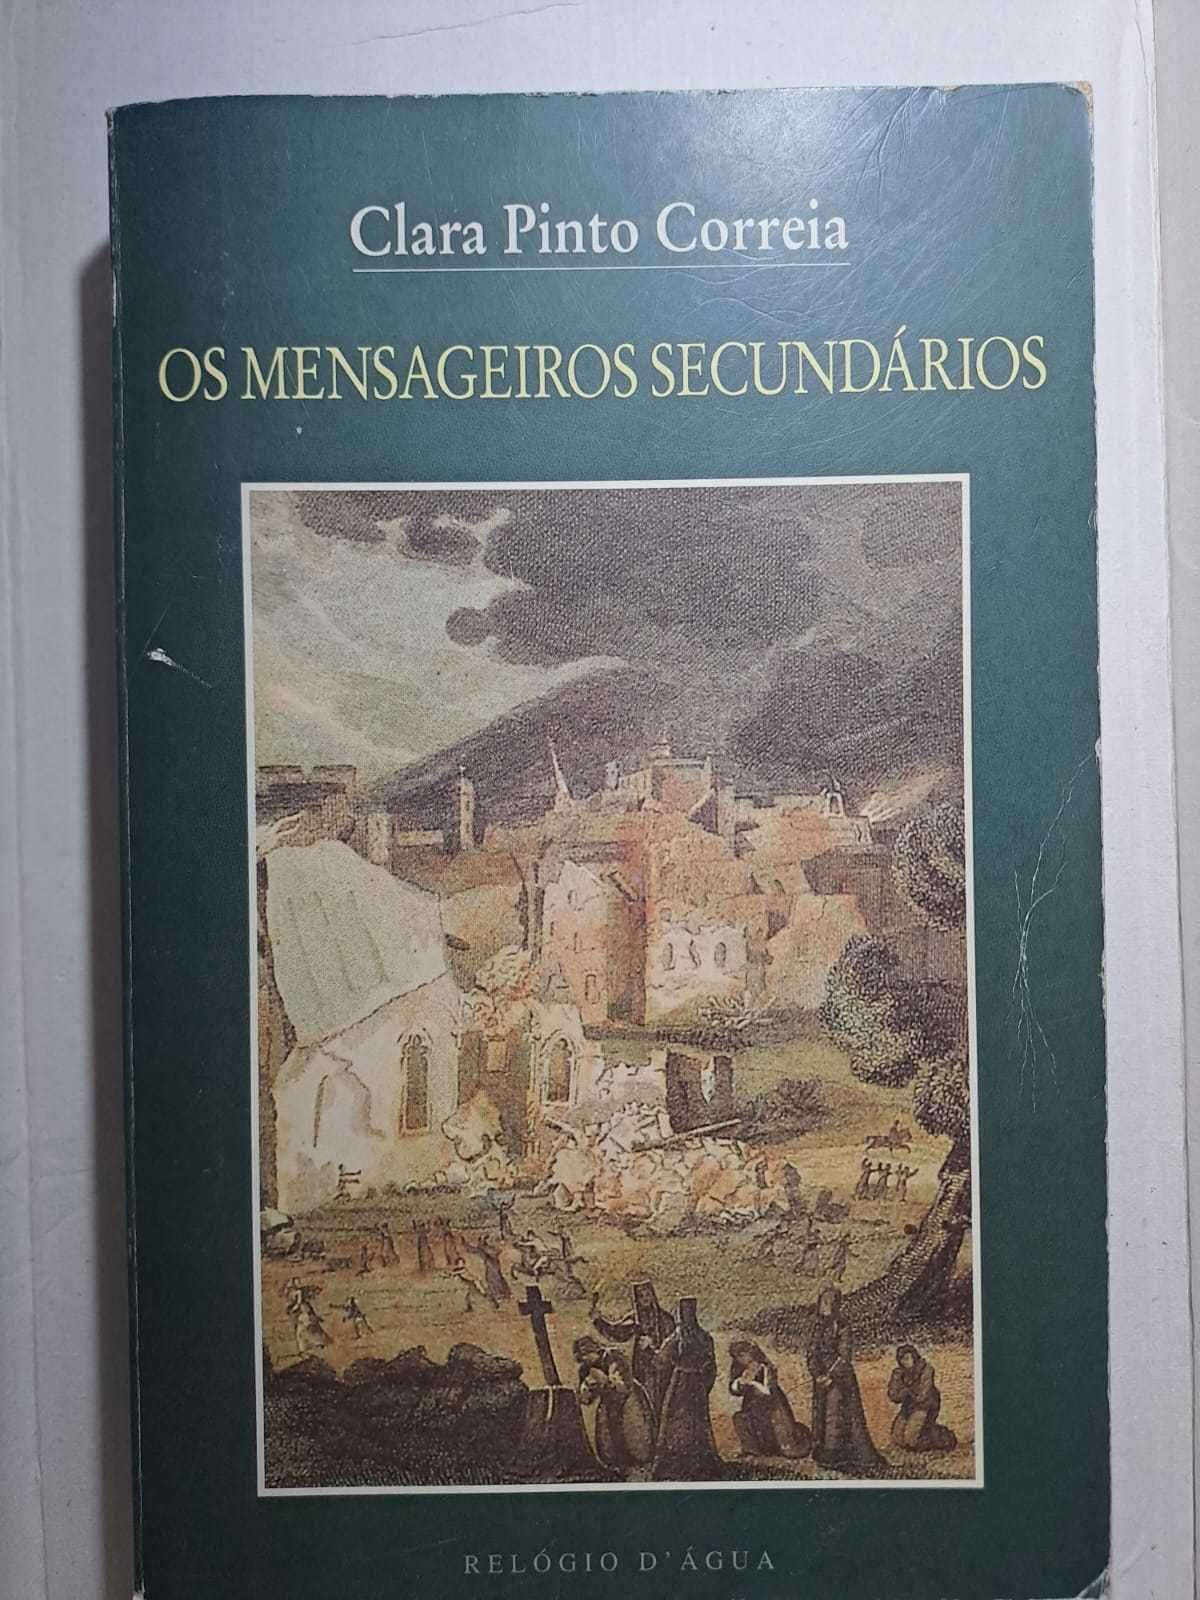 Portes Incluídos - "Os Mensageiros Secundários" - Clara Pinto Correia